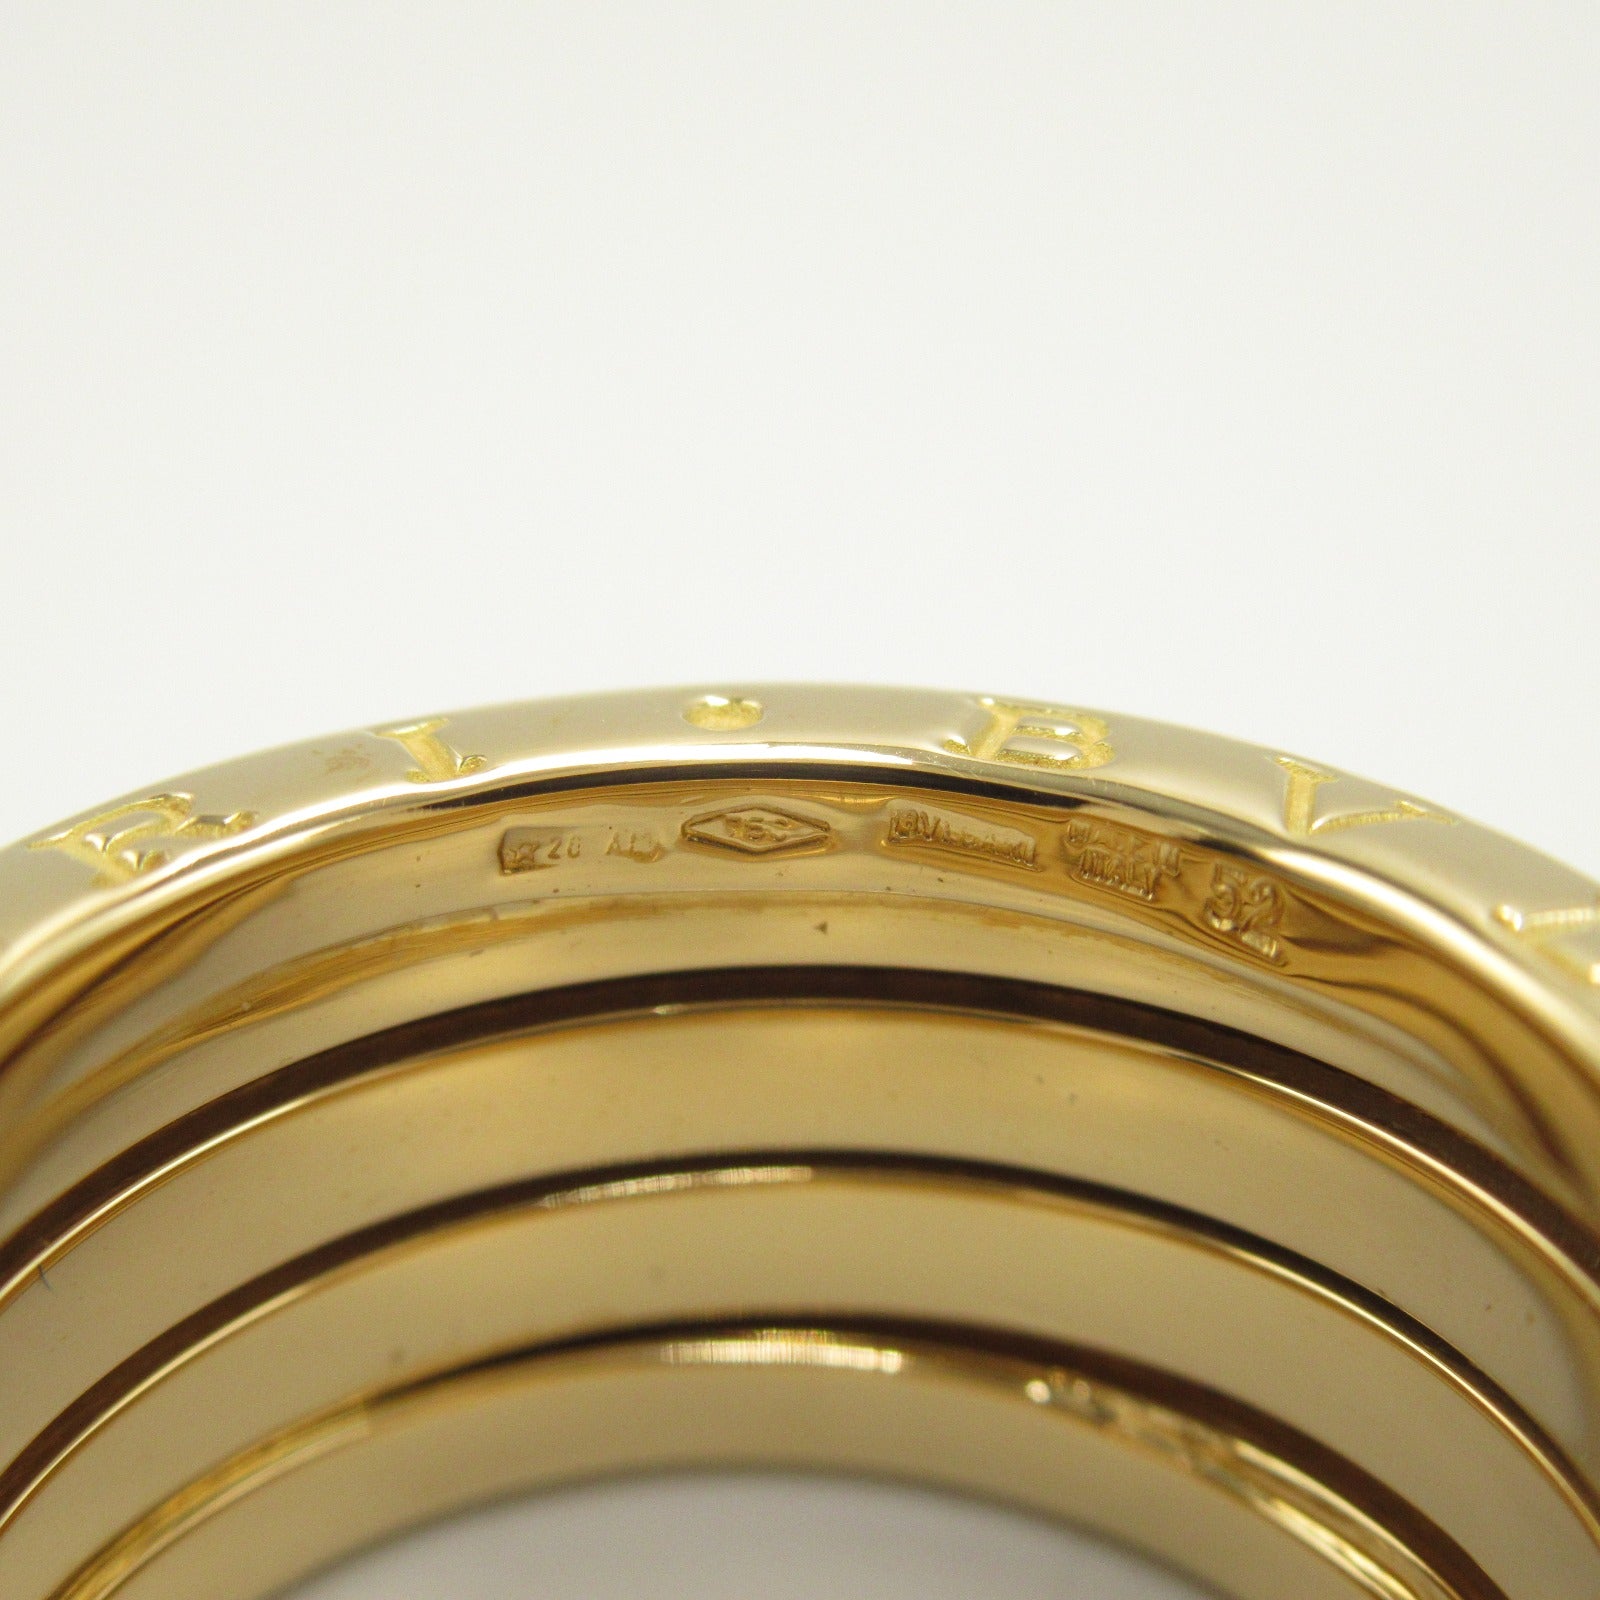 Bulgari BVLGARI B-zero1 Beezero One Ring 4 Band Ring Ring Ring Jewelry K18 (Yellow G)  Gold